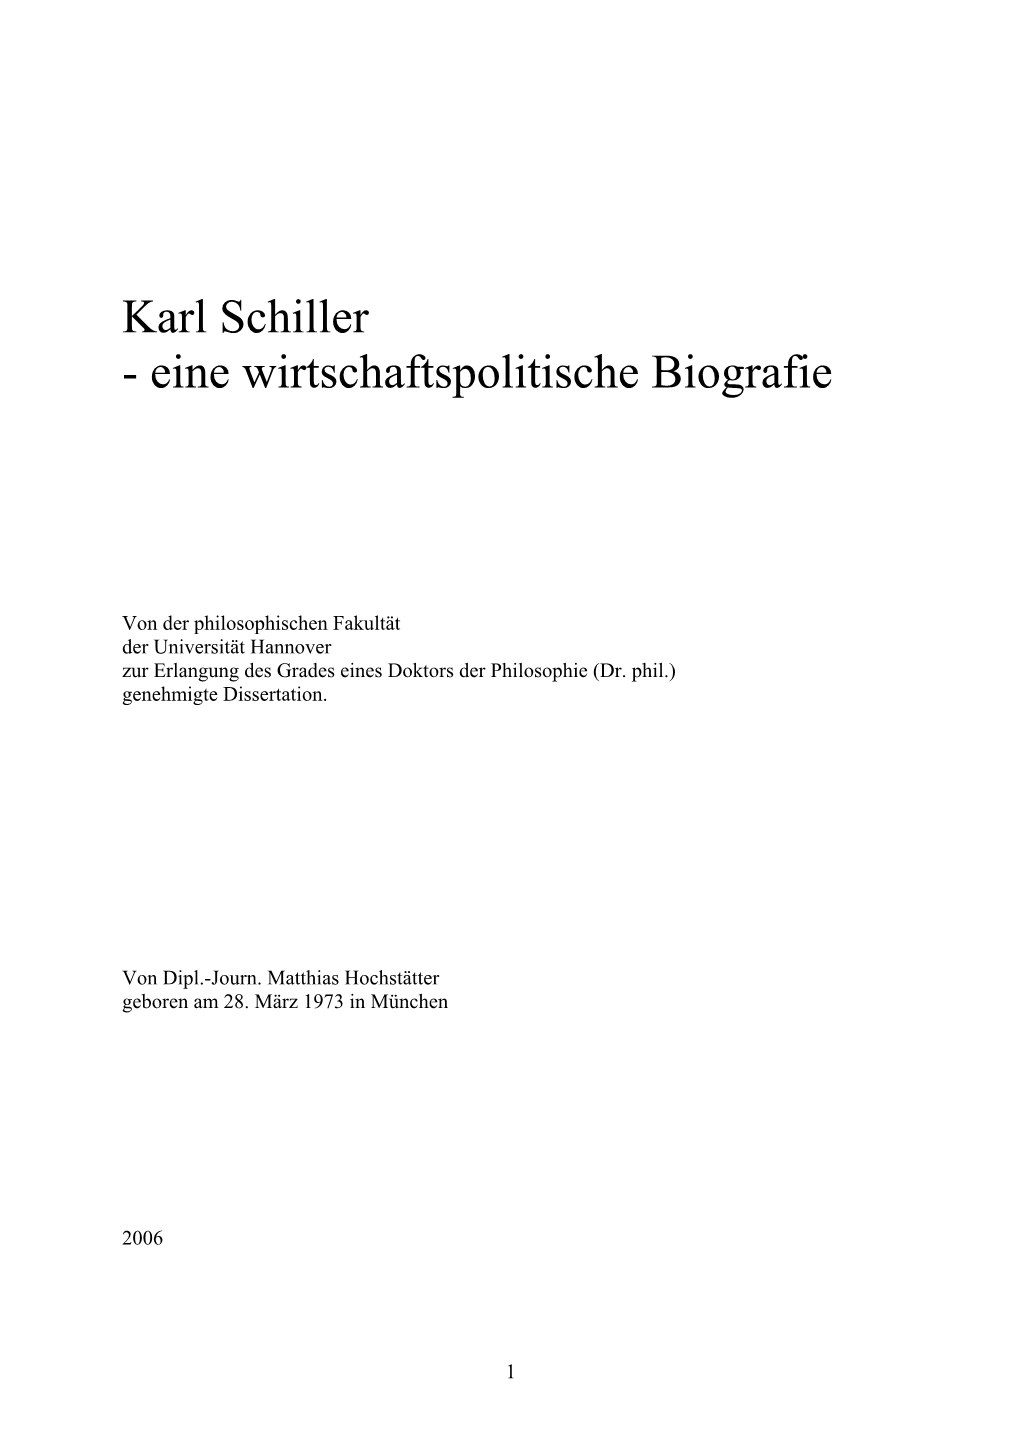 Karl Schiller - Eine Wirtschaftspolitische Biografie